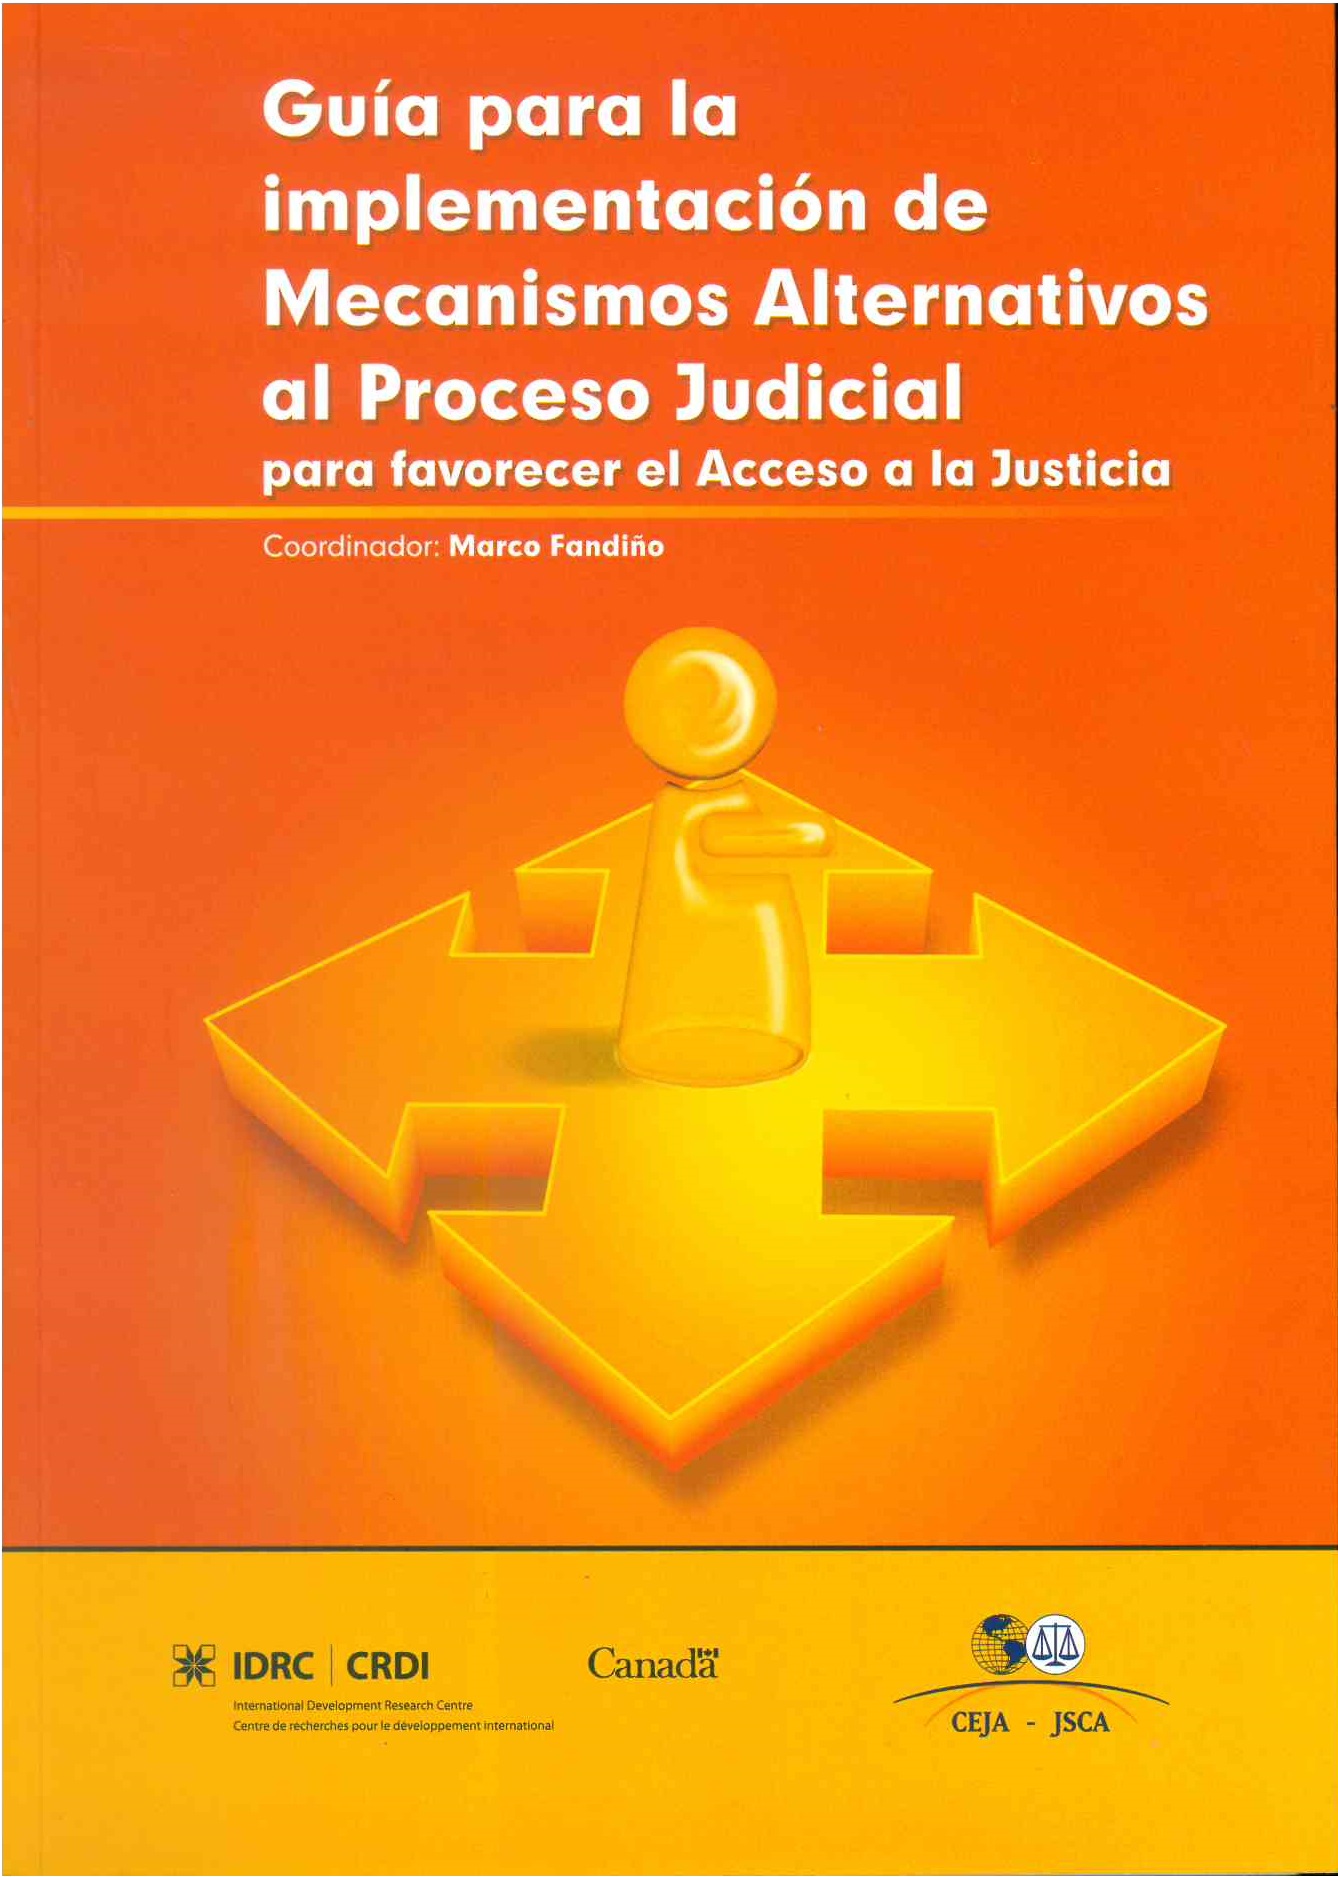 Guía para la Implementación de Mecanismos Alternativos al Proceso Judicial para favorecer el Acceso a la Justicia